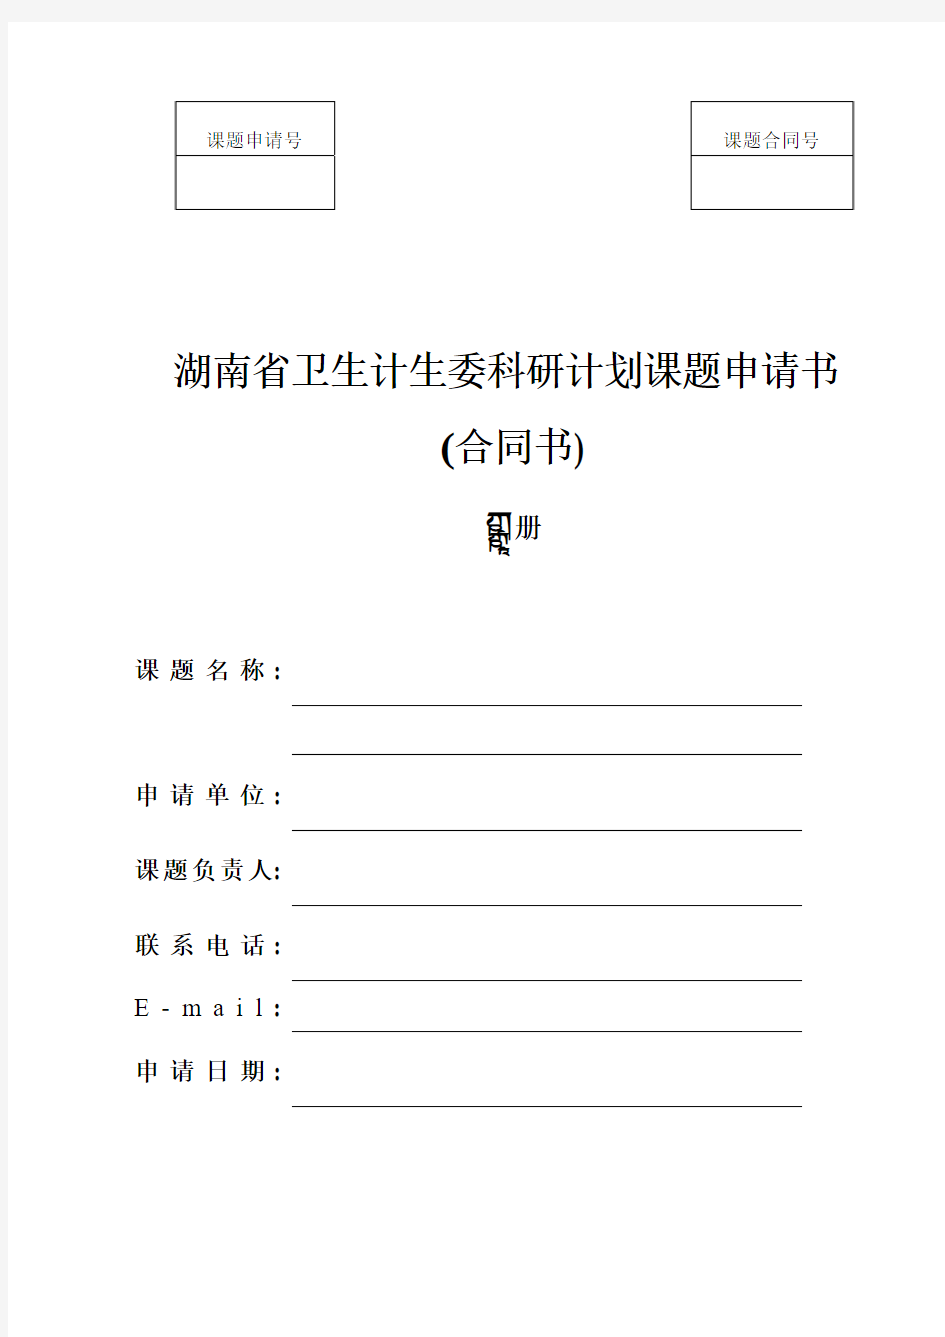 湖南省卫生计生委科研计划课题申请书(上册)2015版